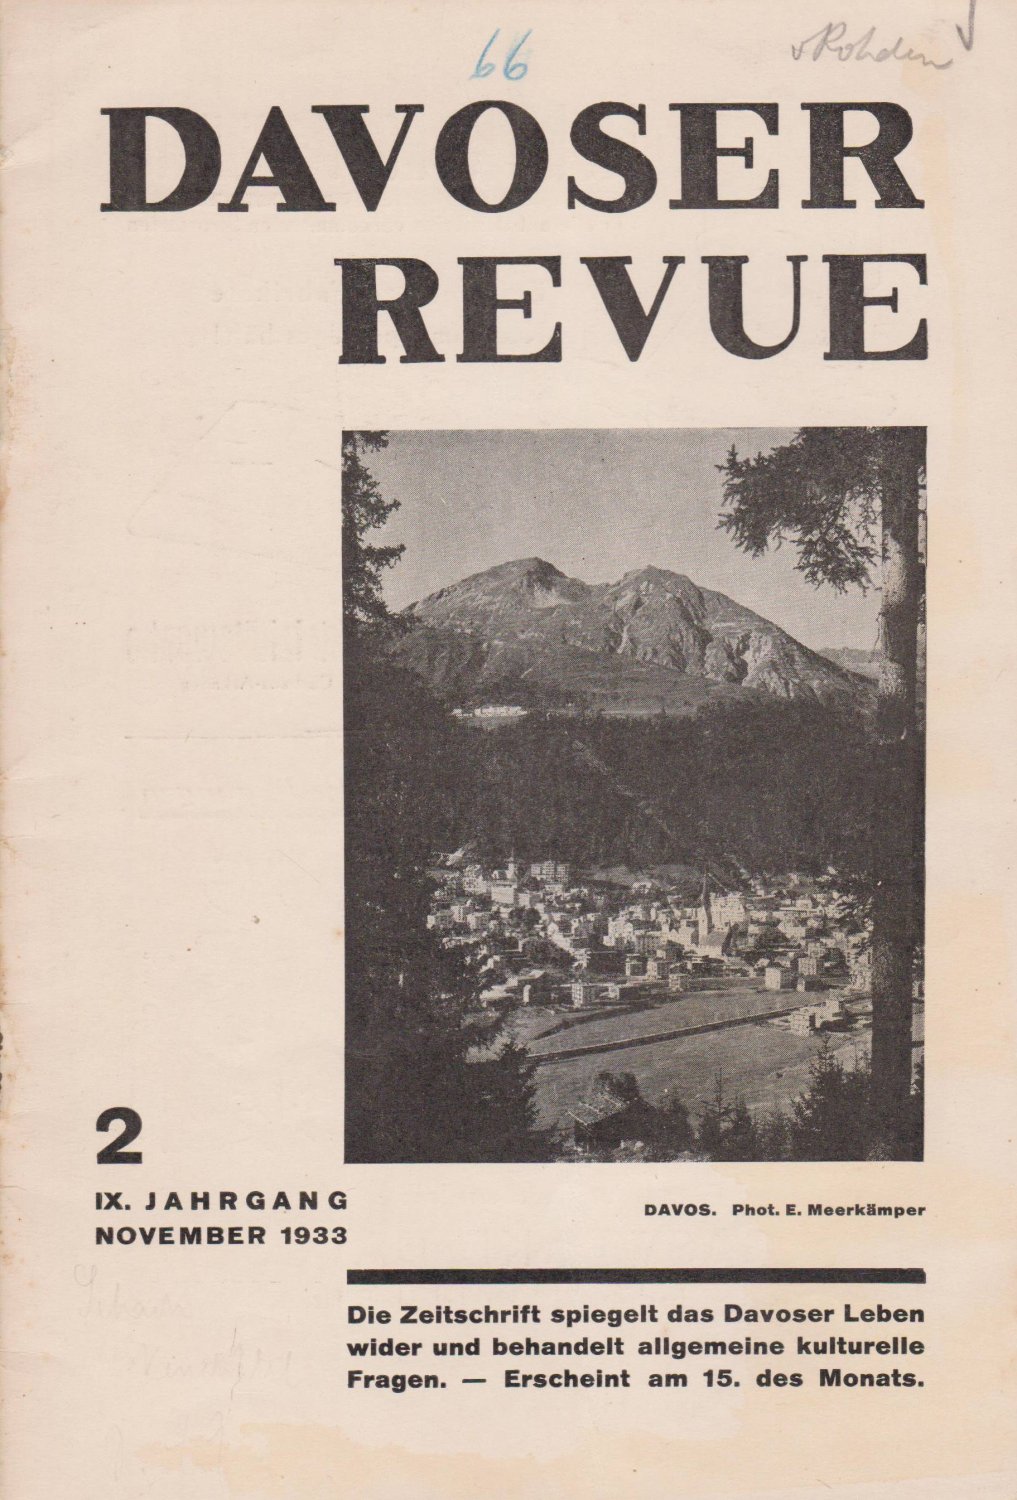   Davoser Revue. IX. Jahrgang, Nummer 2, November 1933. Zeitschrift für Literatur, Wissenschaft, Kunst und Sport. 